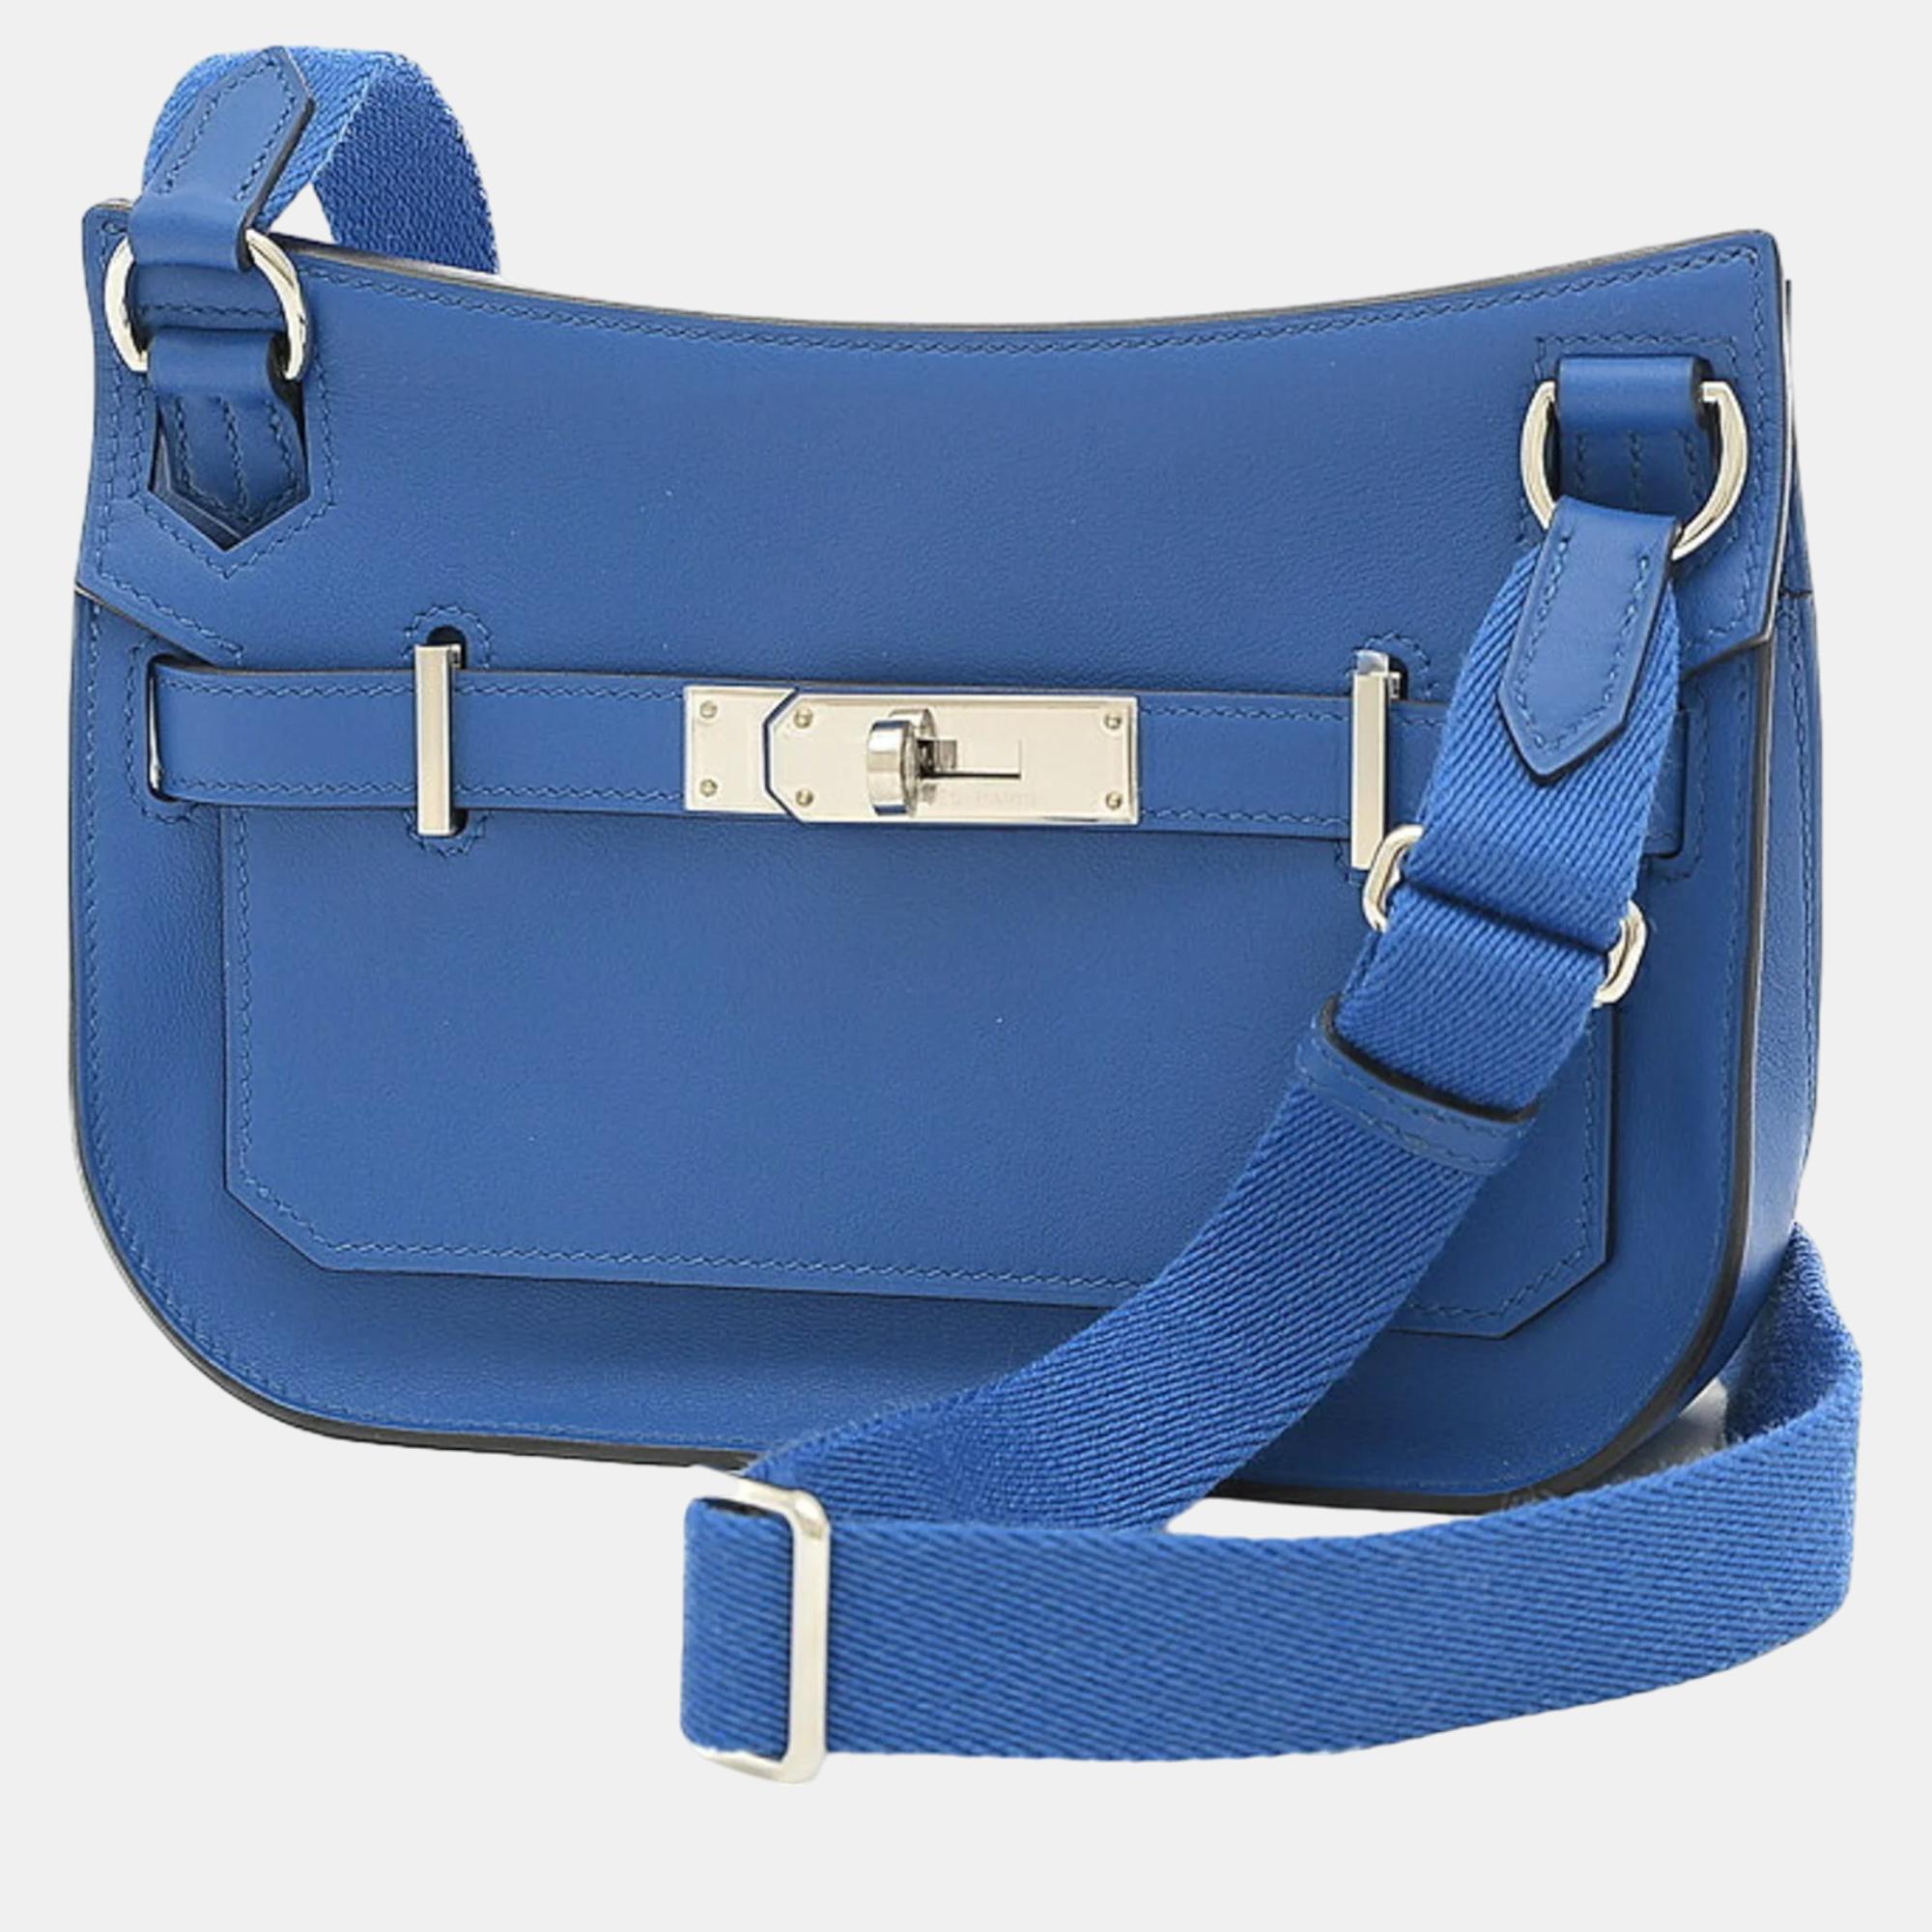 Hermes blue swift leather mini jypsiere shoulder bag